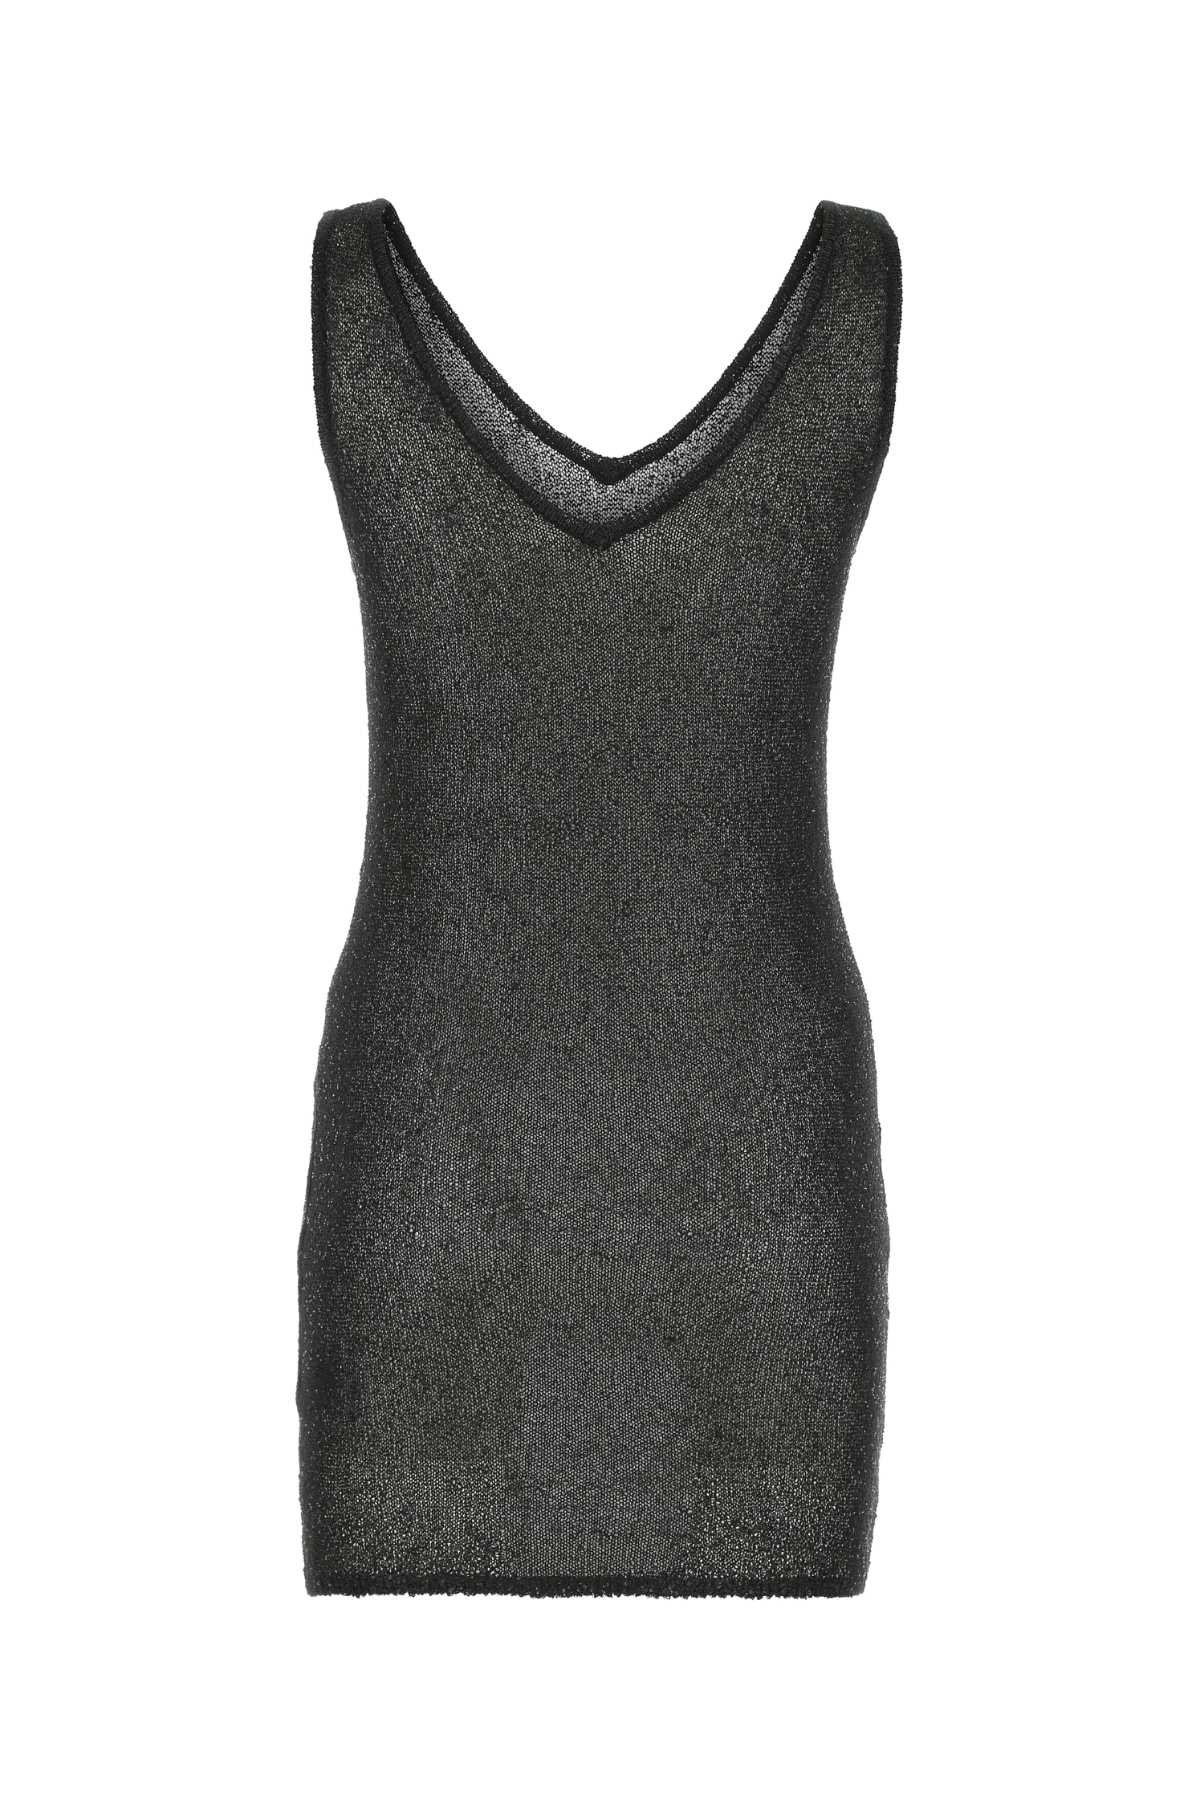 Remain Birger Christensen Black Polyester Mini Dress